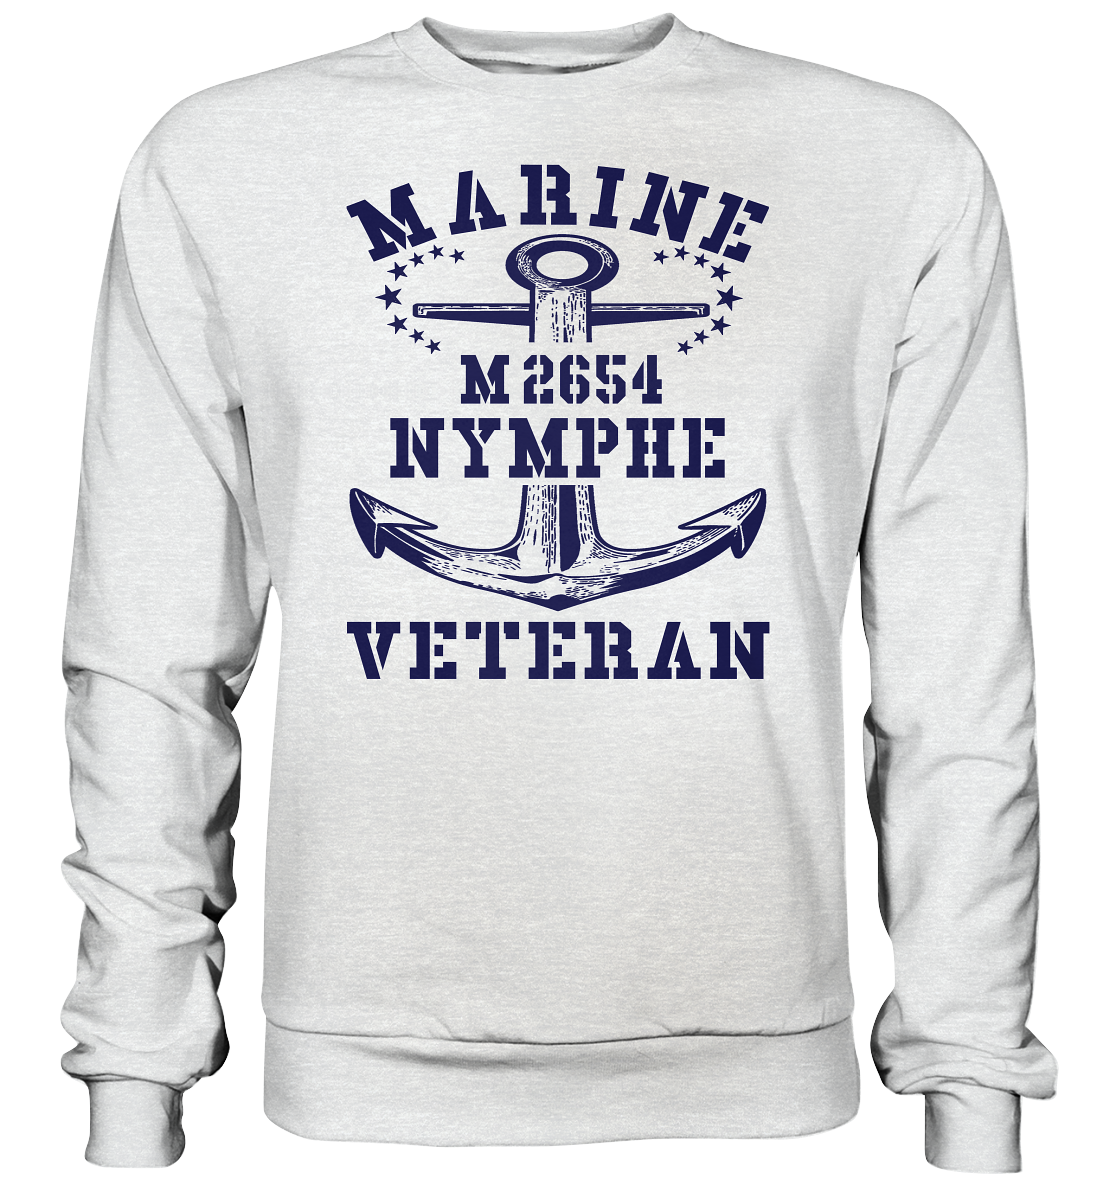 BiMi M2654 NYMPHE Marine Veteran - Premium Sweatshirt